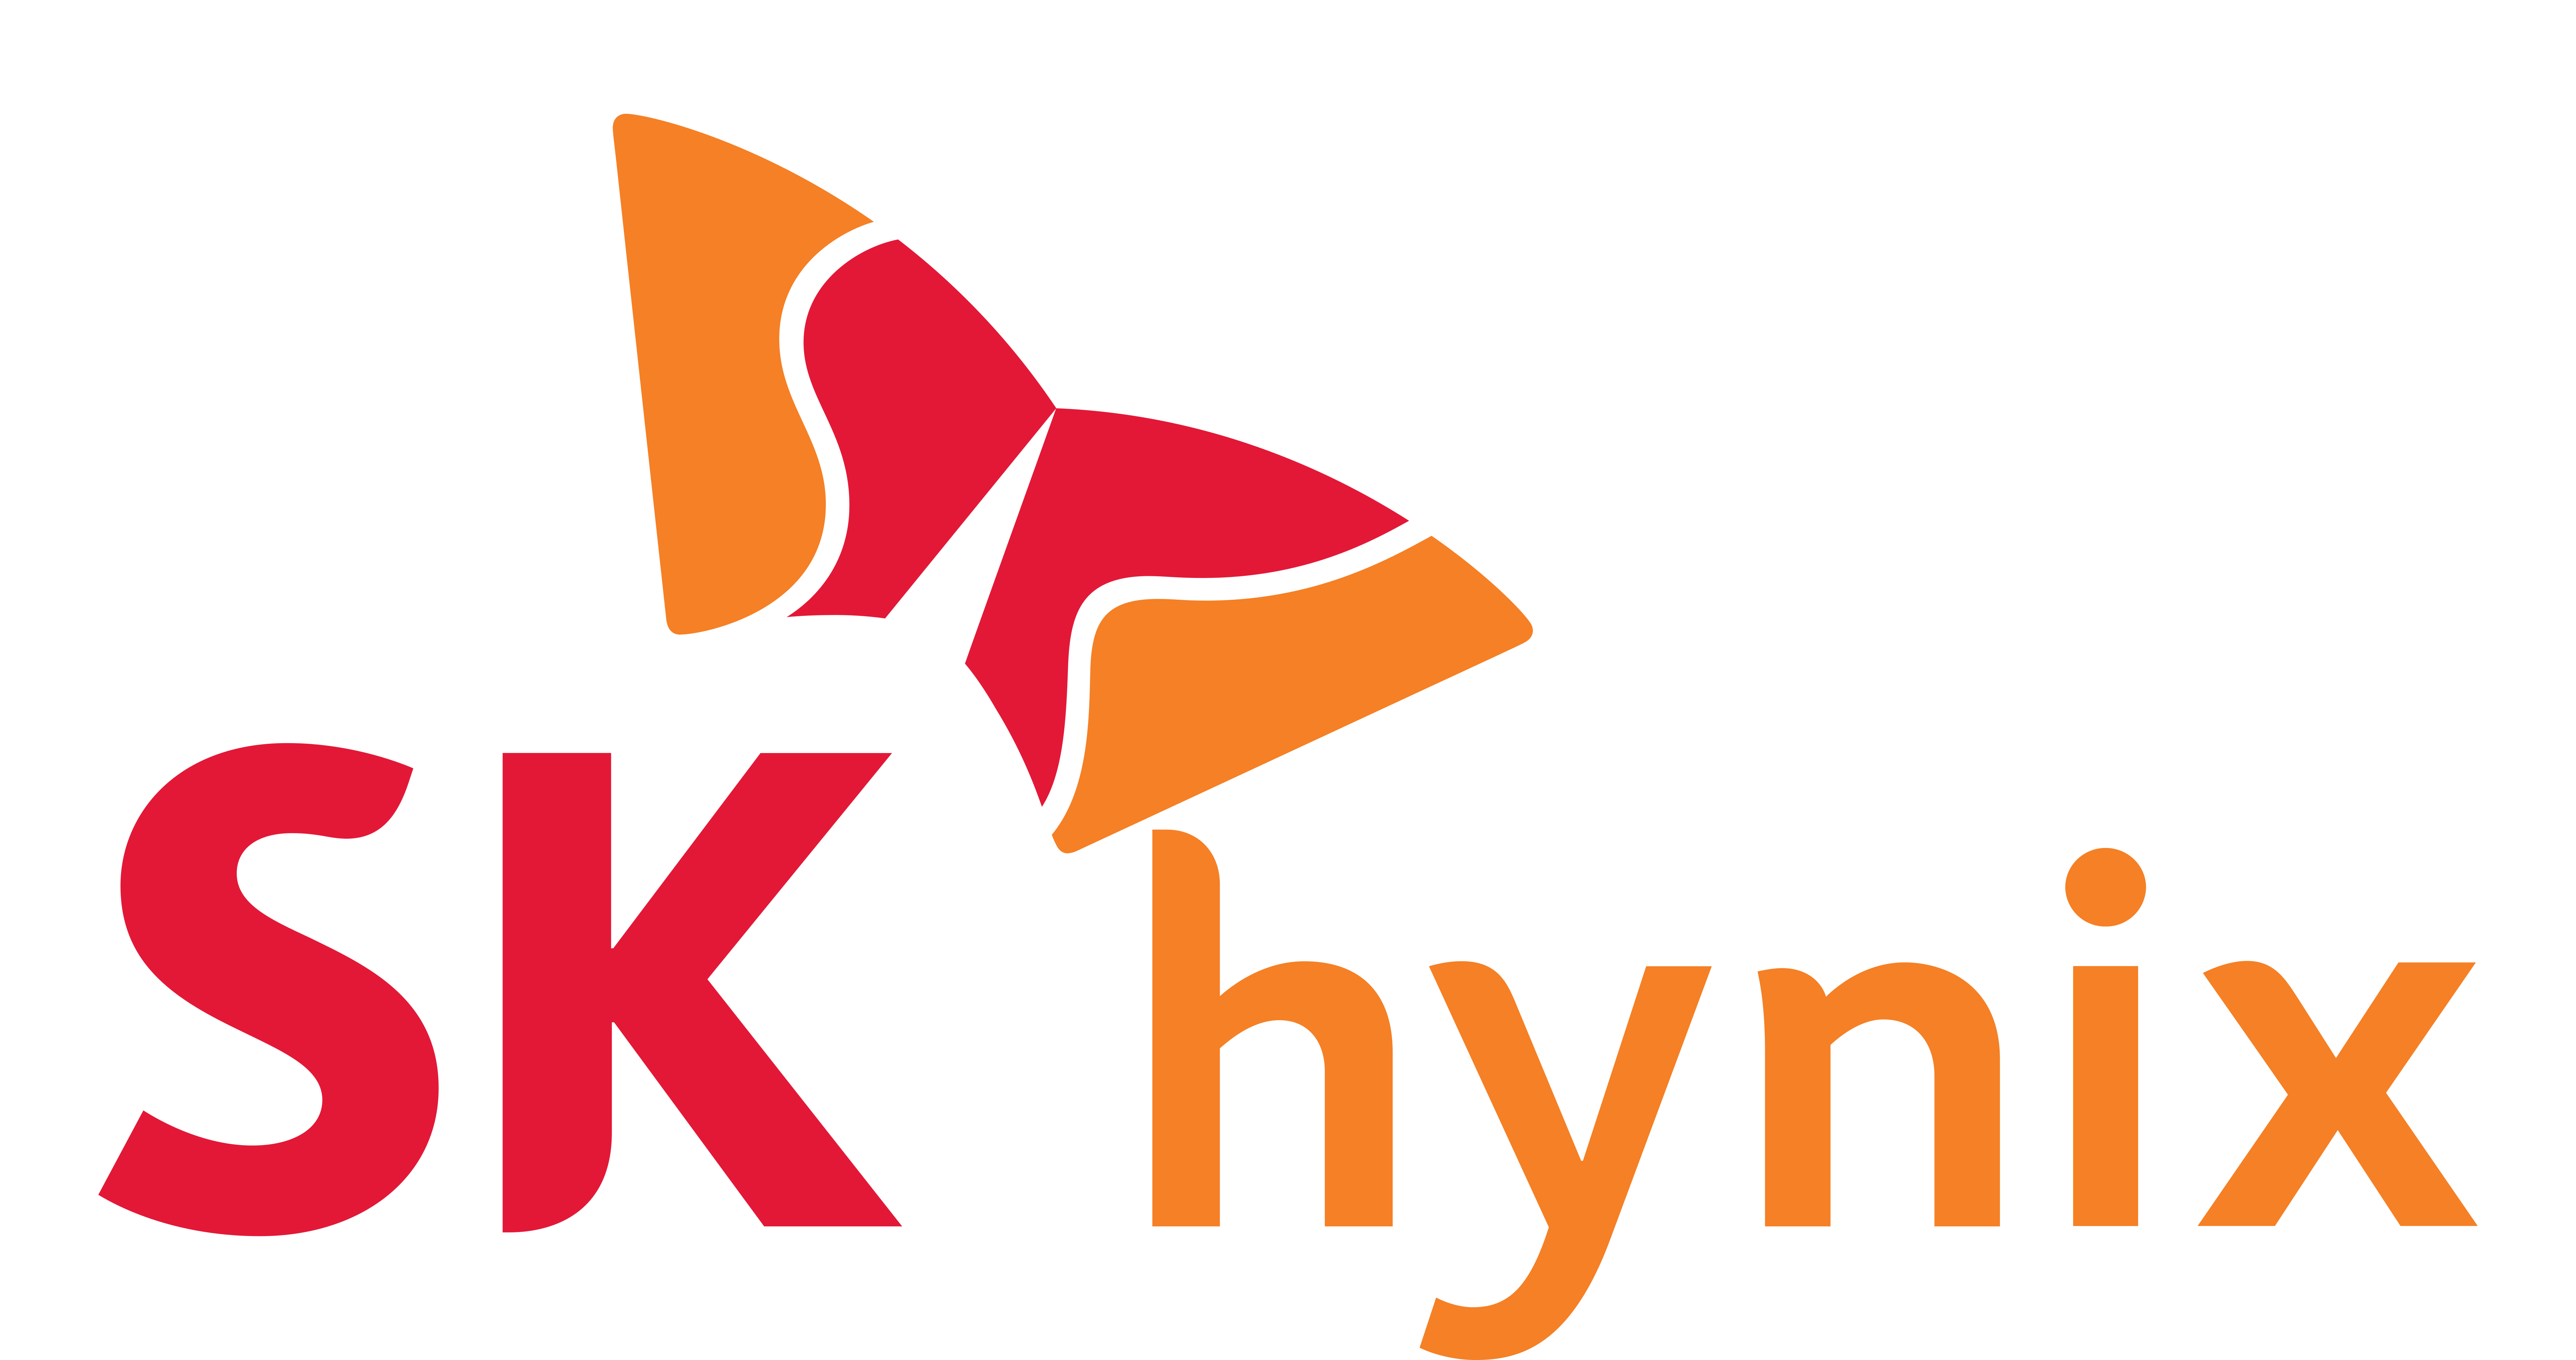 HYNIX